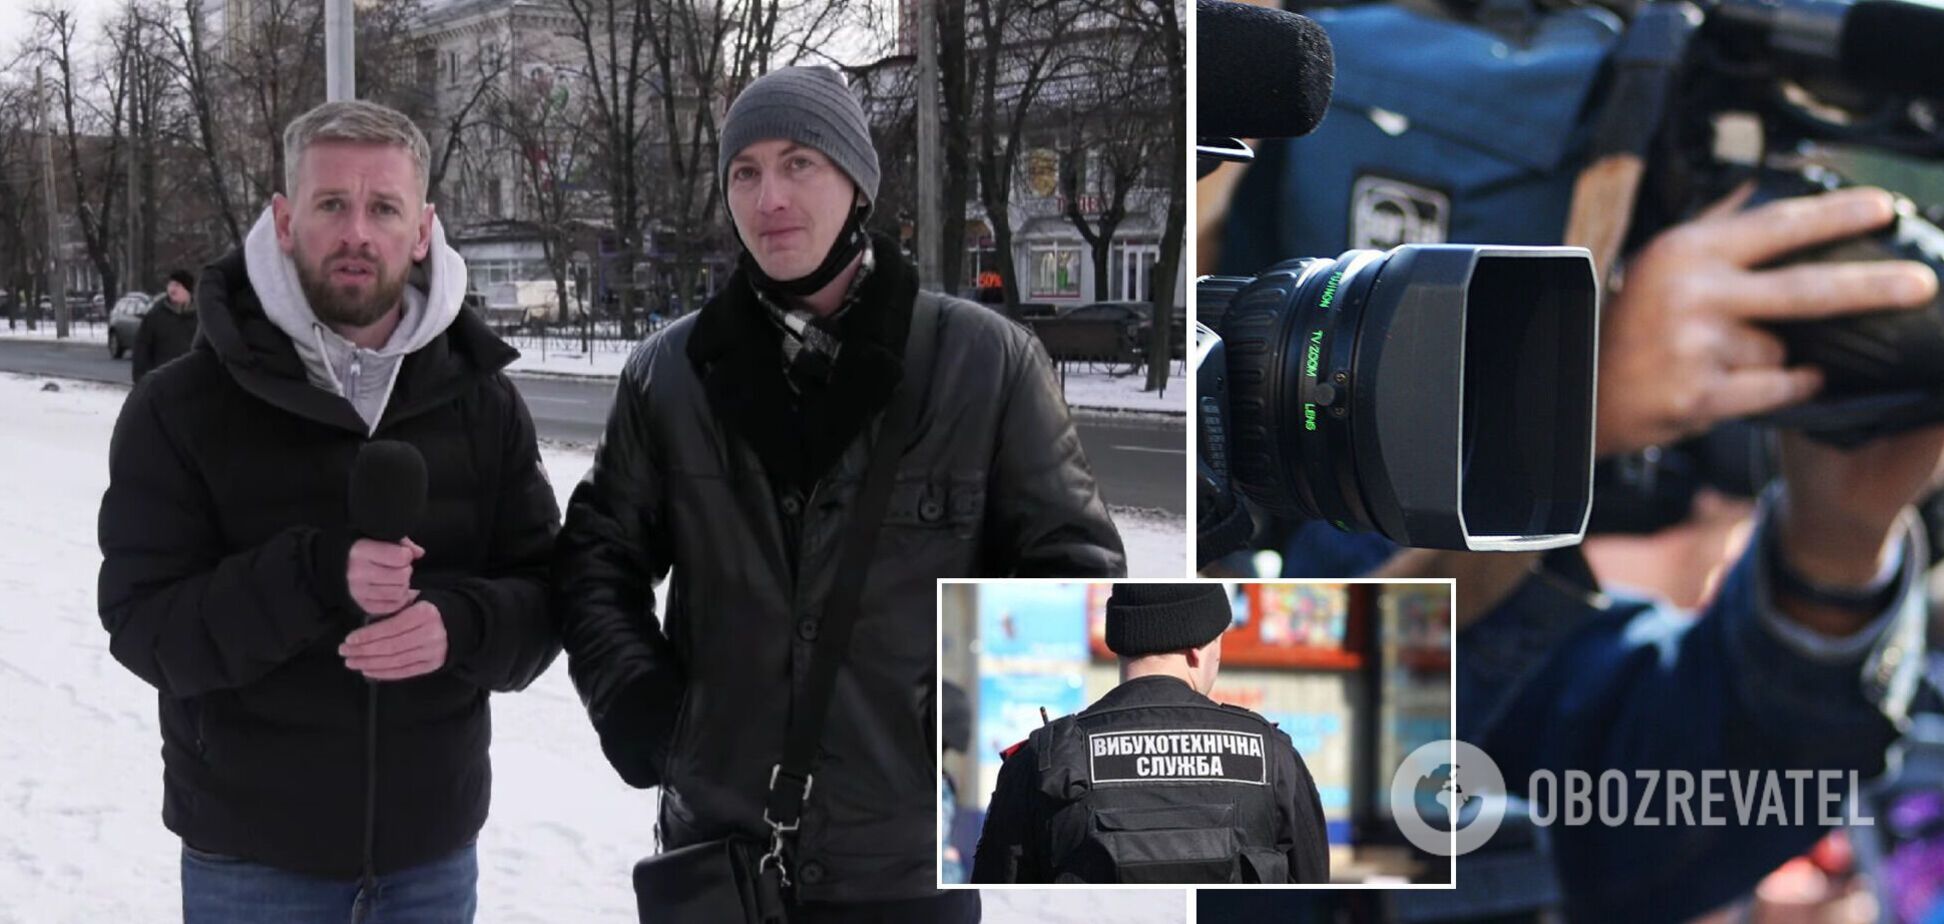 Как в Черкассах 'нашли' минера: журналисты провели эксперимент для проверки готовности украинцев прийти на помощь. Видео